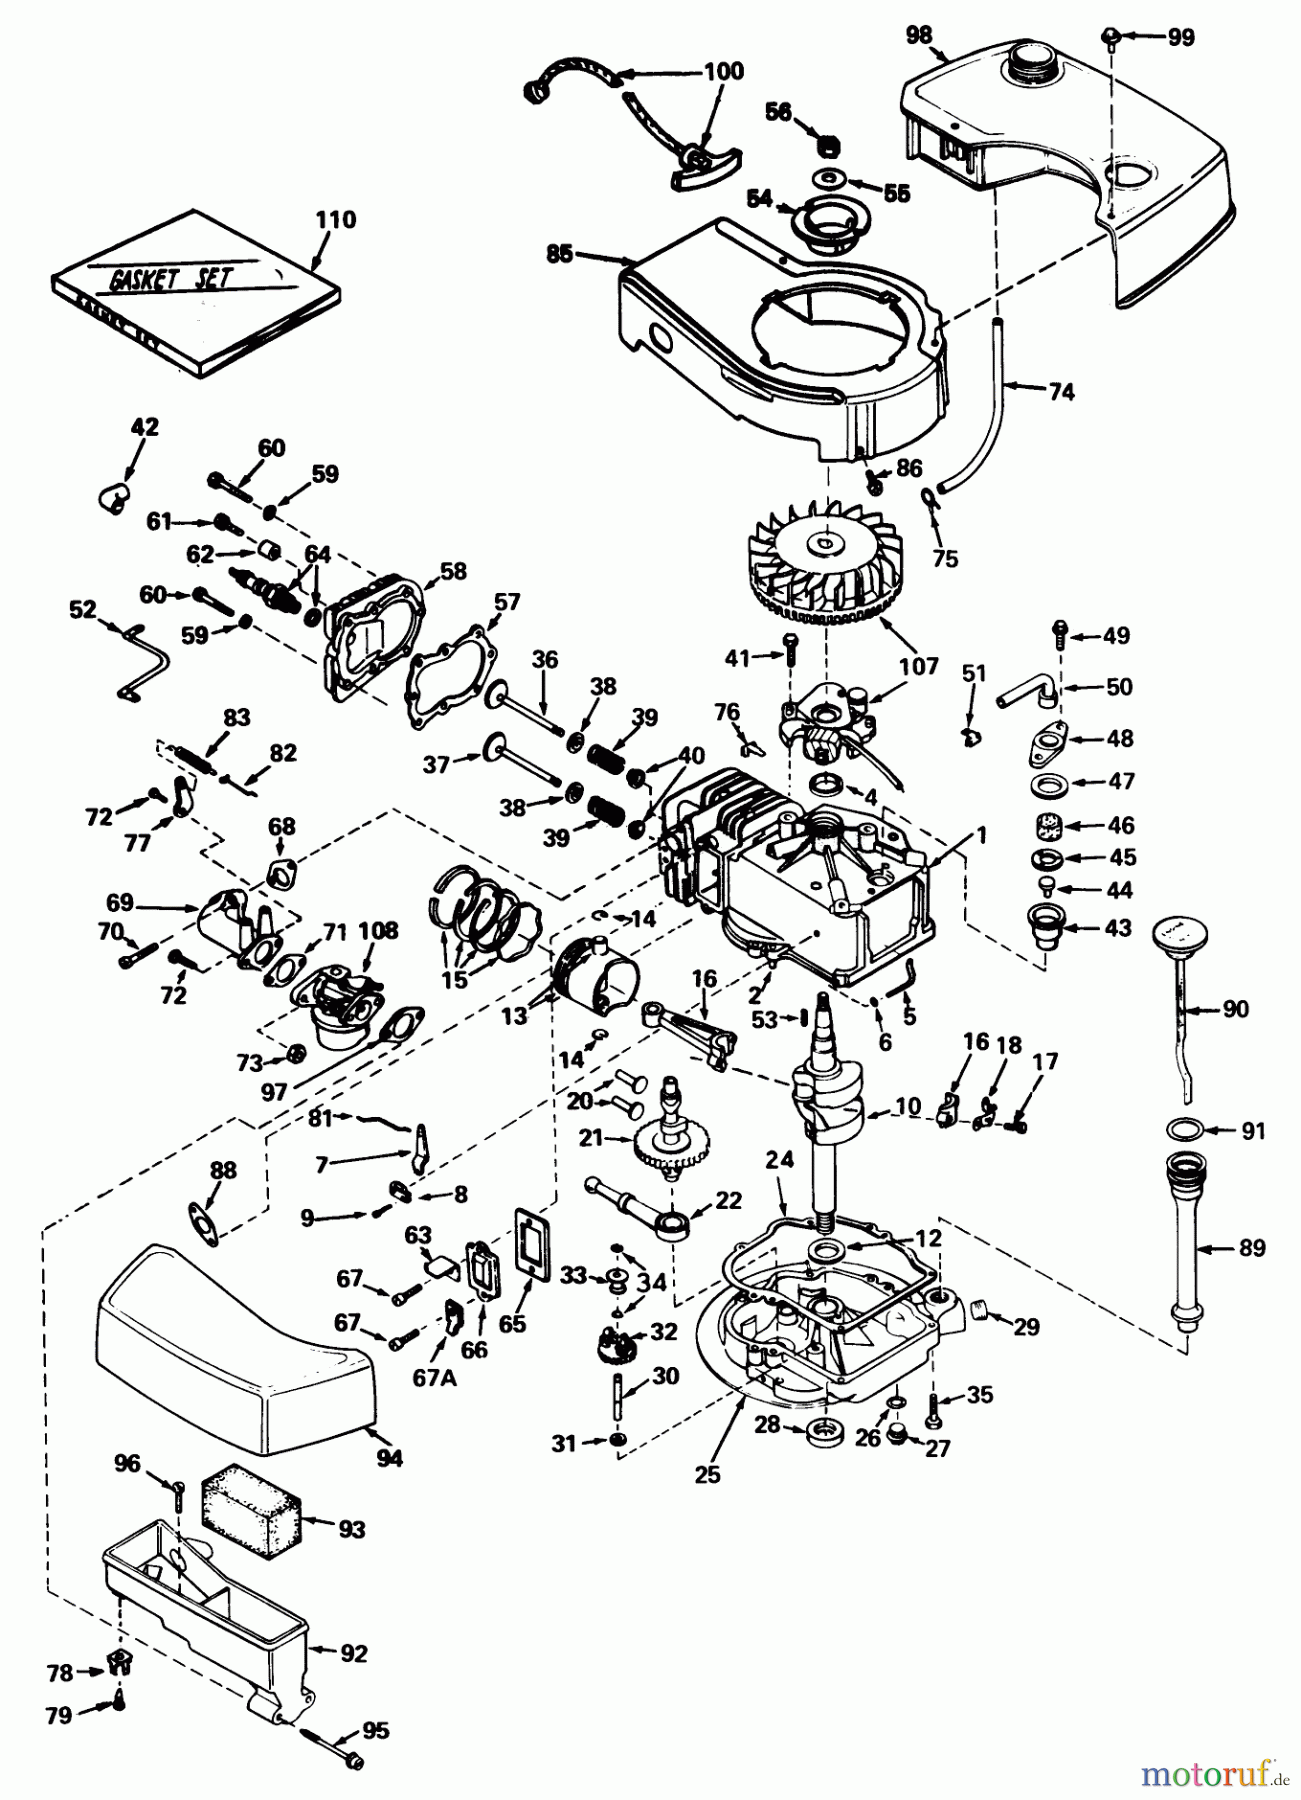  Toro Neu Mowers, Walk-Behind Seite 1 20550 - Toro Lawnmower, 1974 (4000001-4999999) ENGINE MODEL NO. TNT 120-12001 (MOWER MODEL NO. 20660)